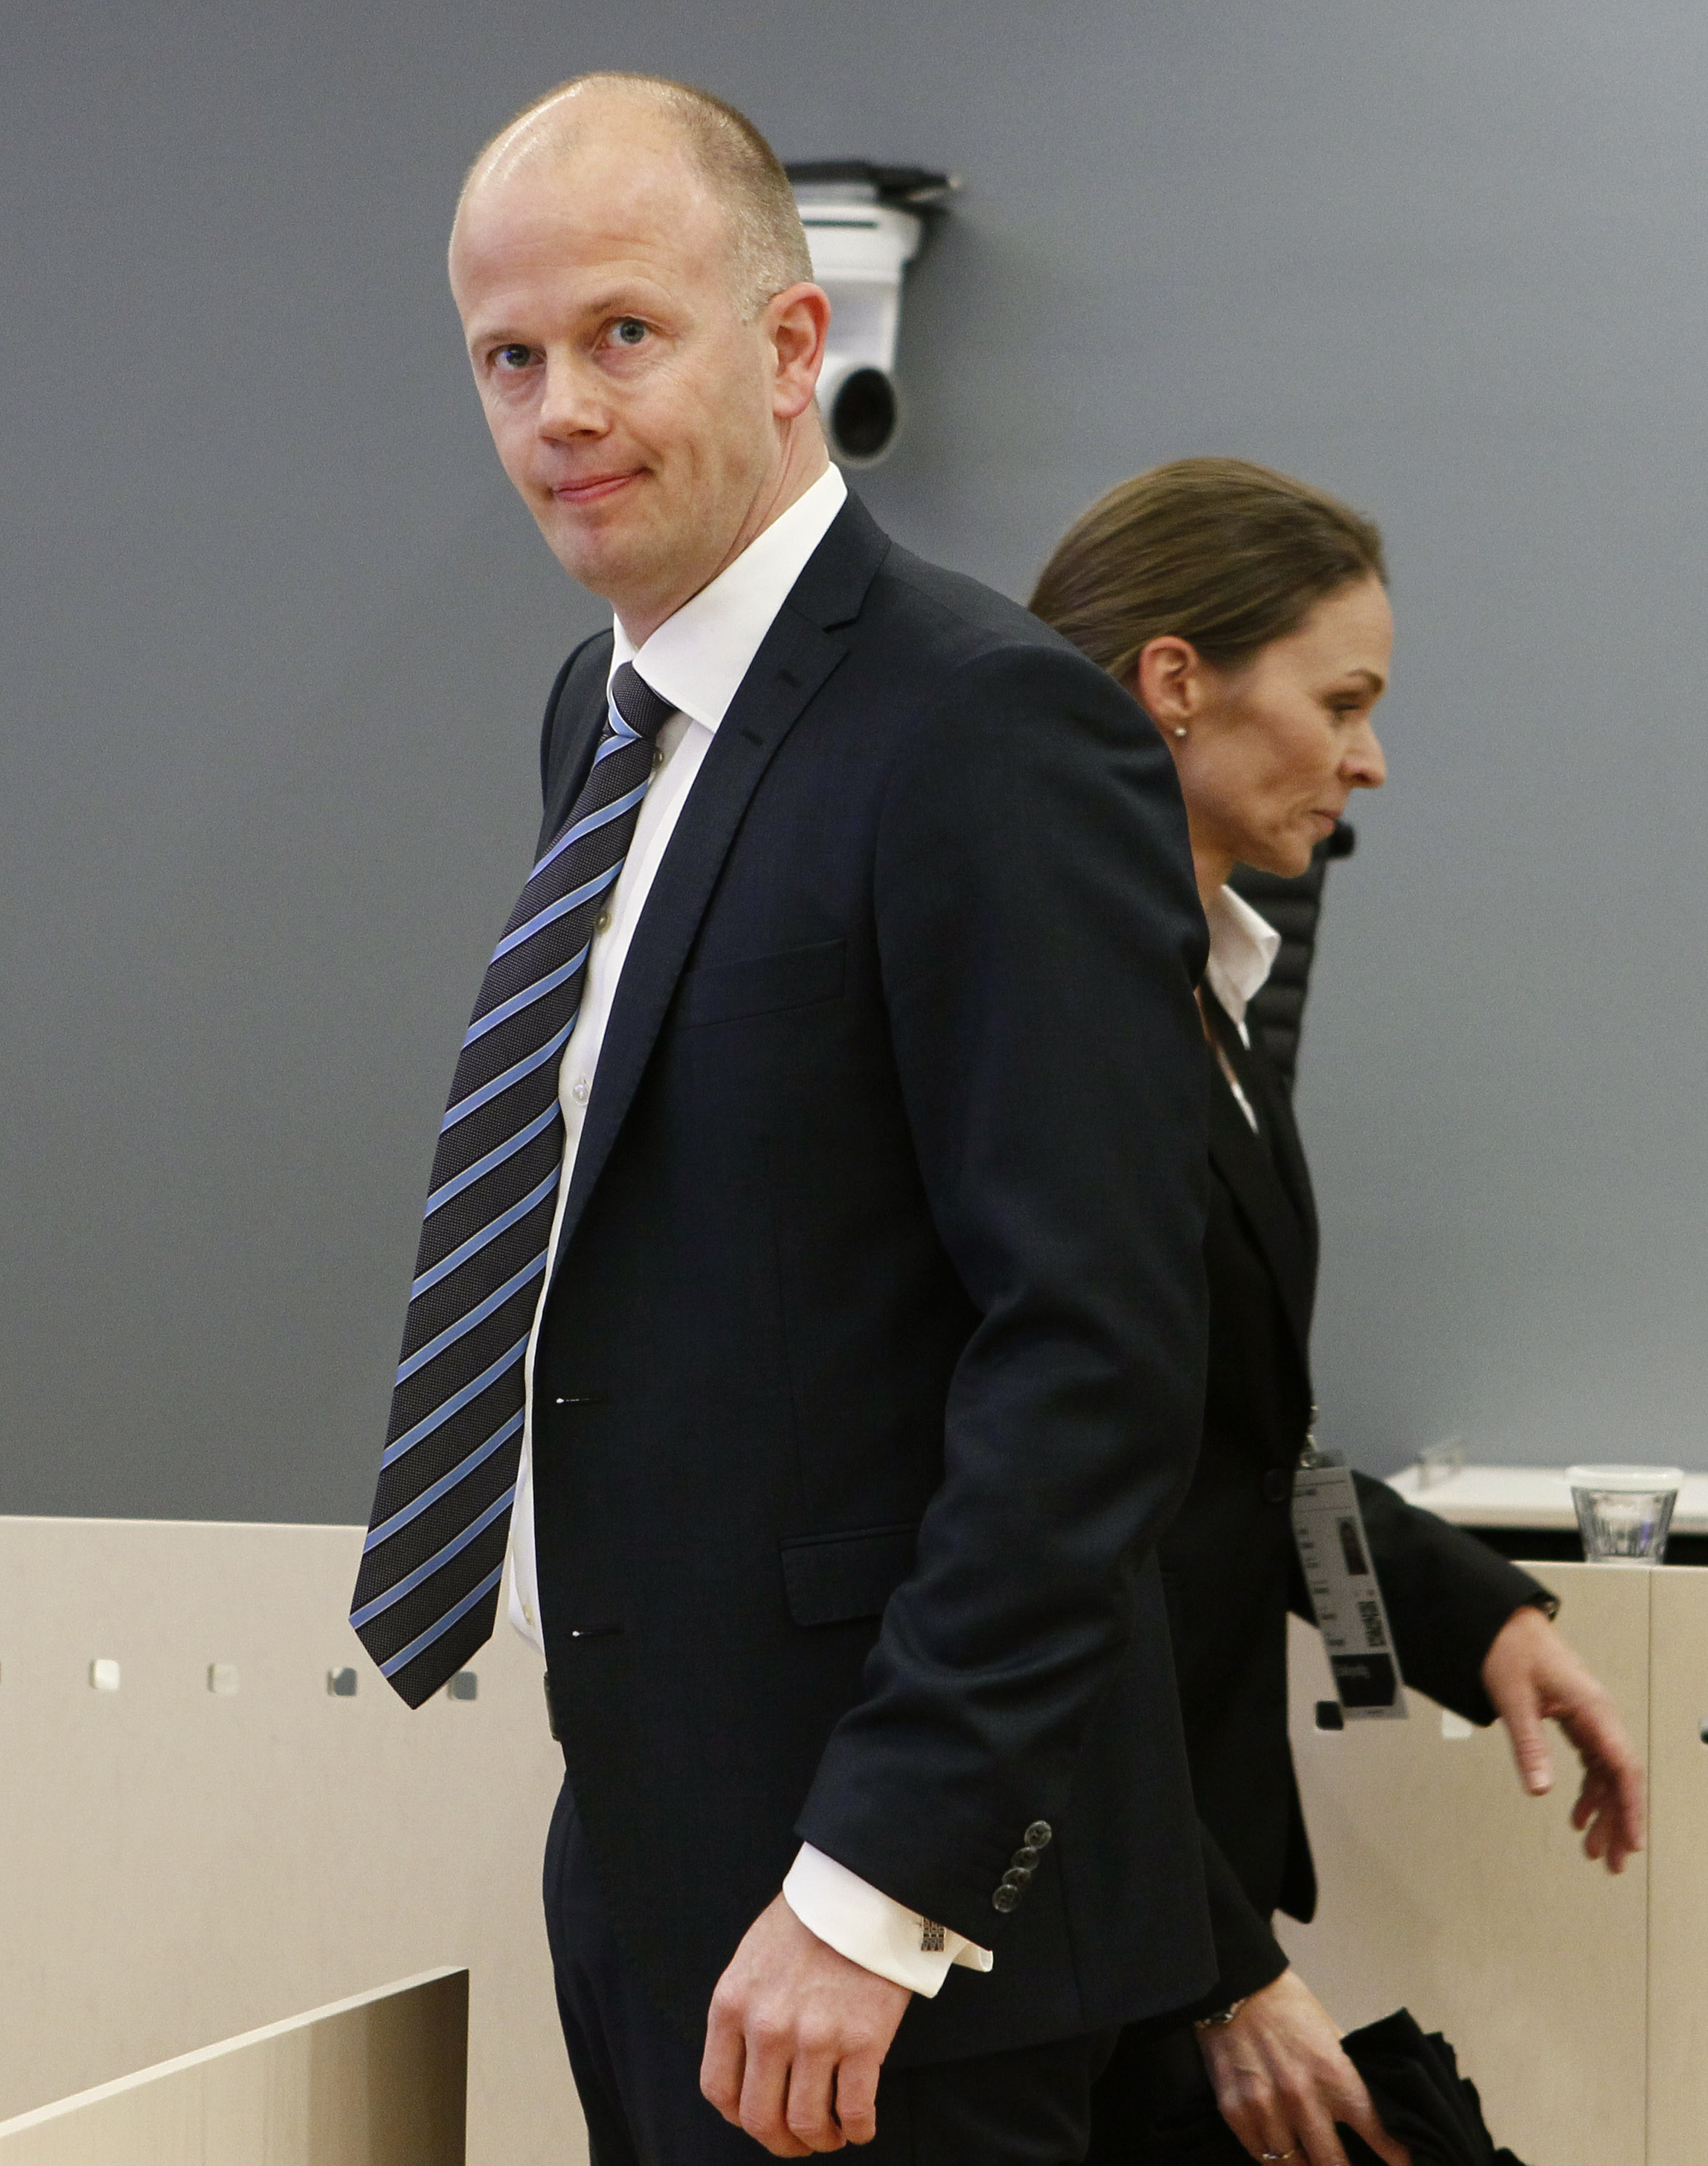 Den andre åklagaren, Svein Holden, inledde den andra delen av åklagarsidans sakframtställan.